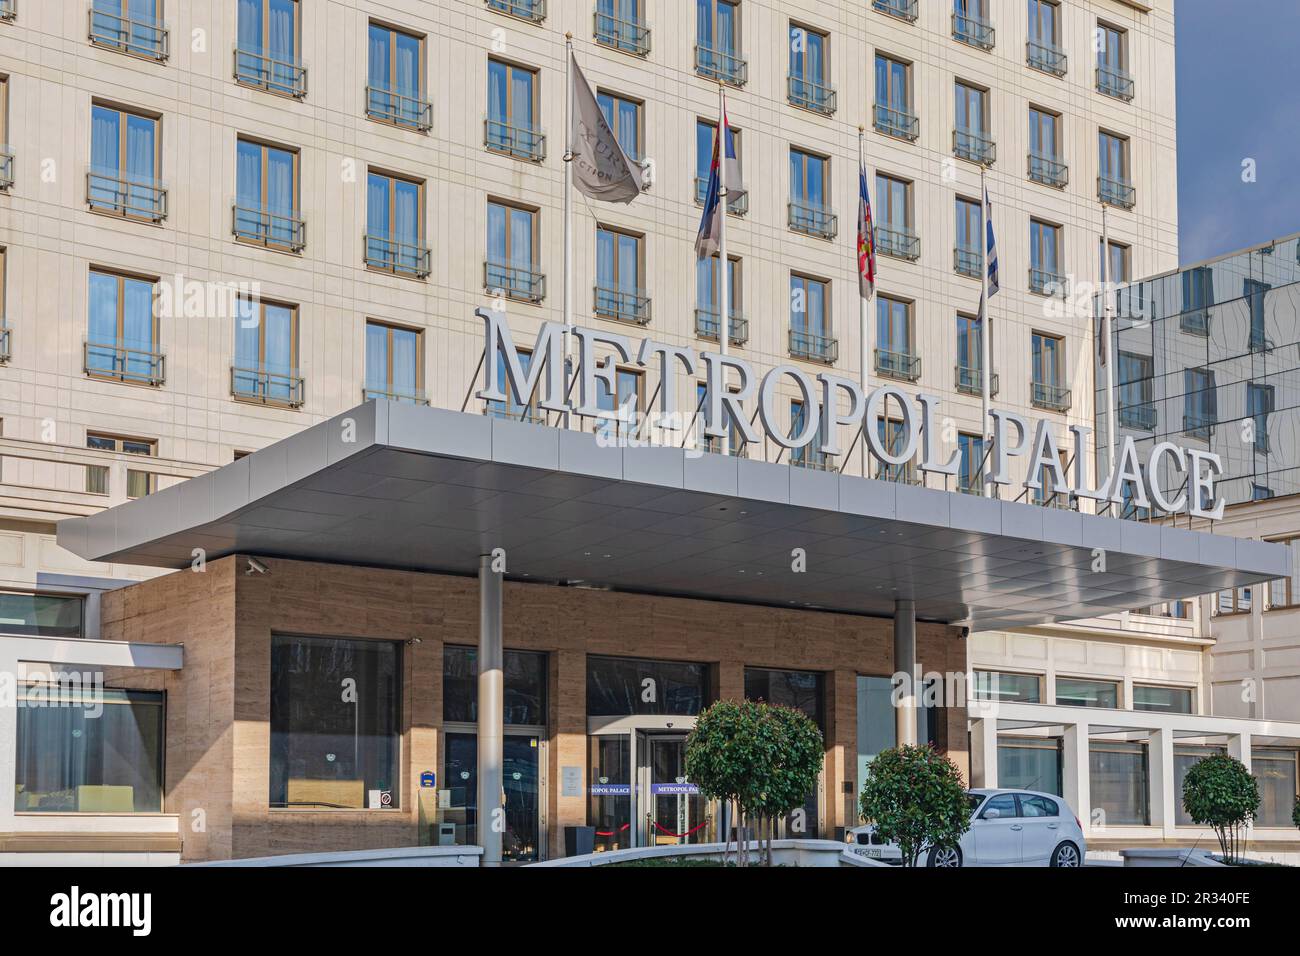 Belgrado, Serbia - 14 de febrero de 2021: Edificio del hotel Metropol Palace en la capital en el soleado día de invierno. Foto de stock